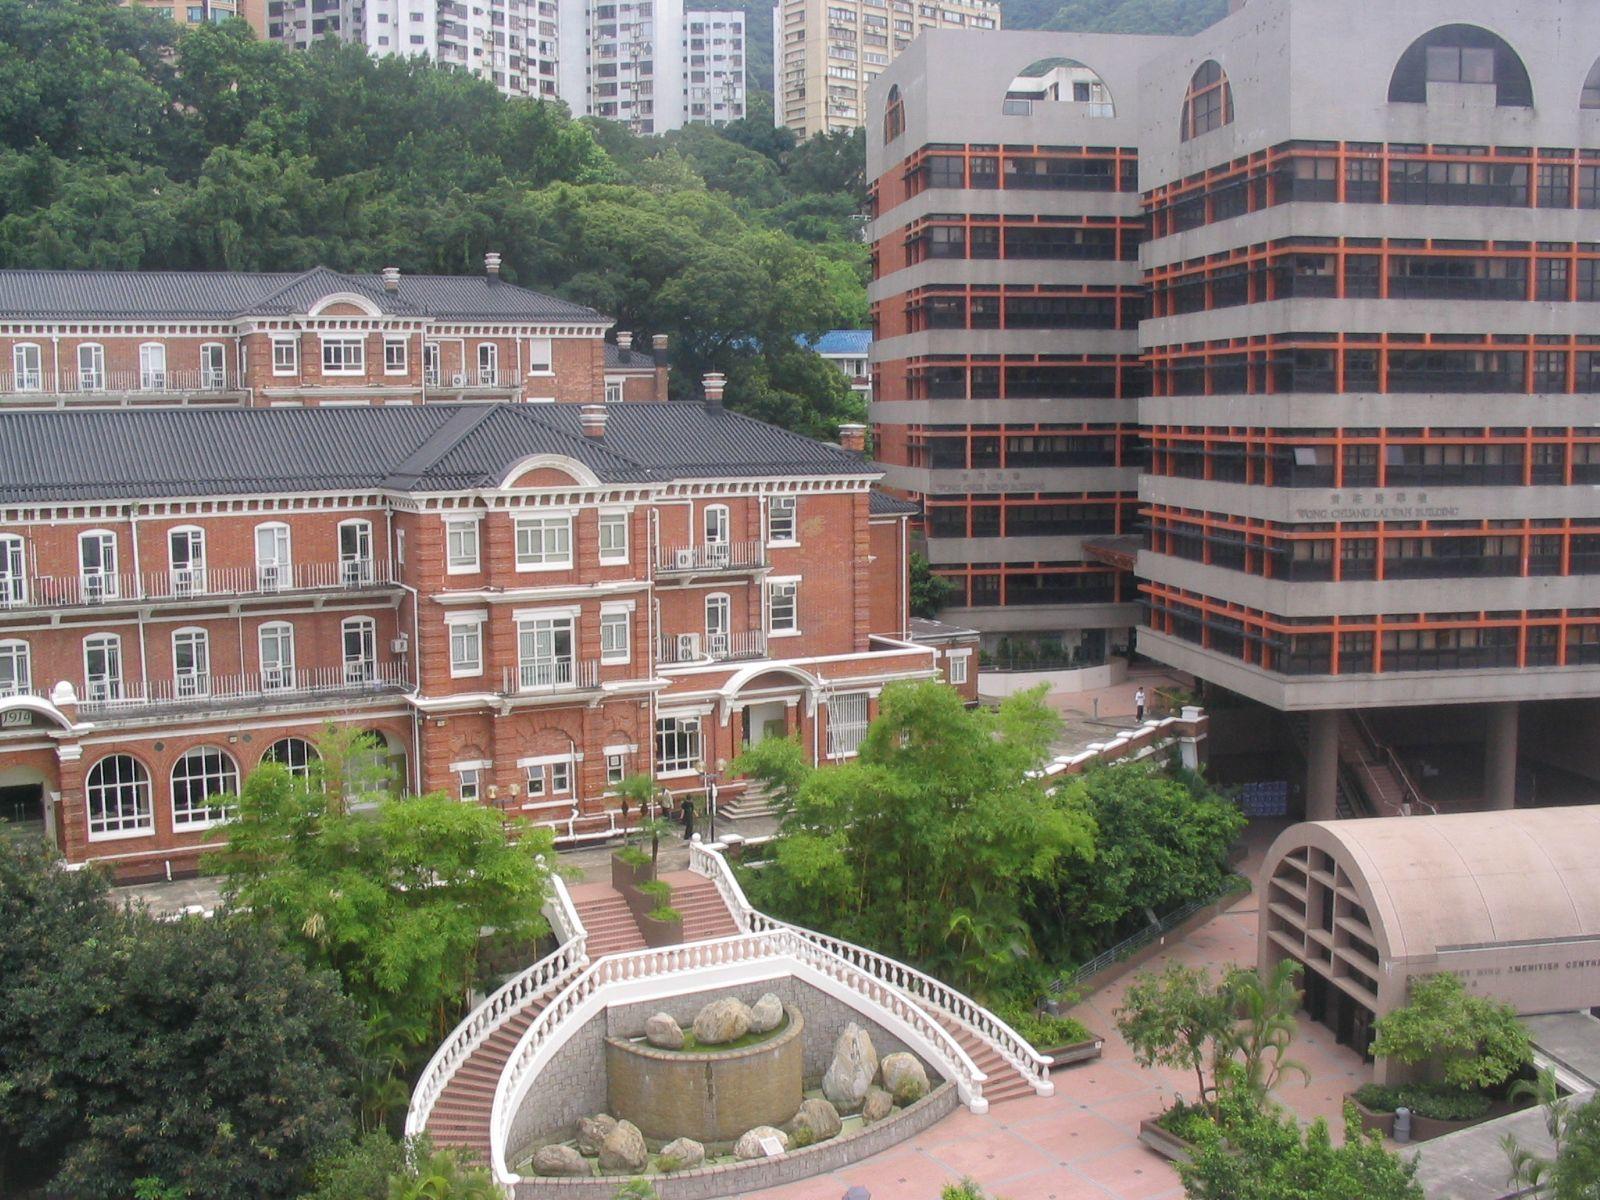 香港的大学校园中有哪些值得一看的风景？ - 知乎